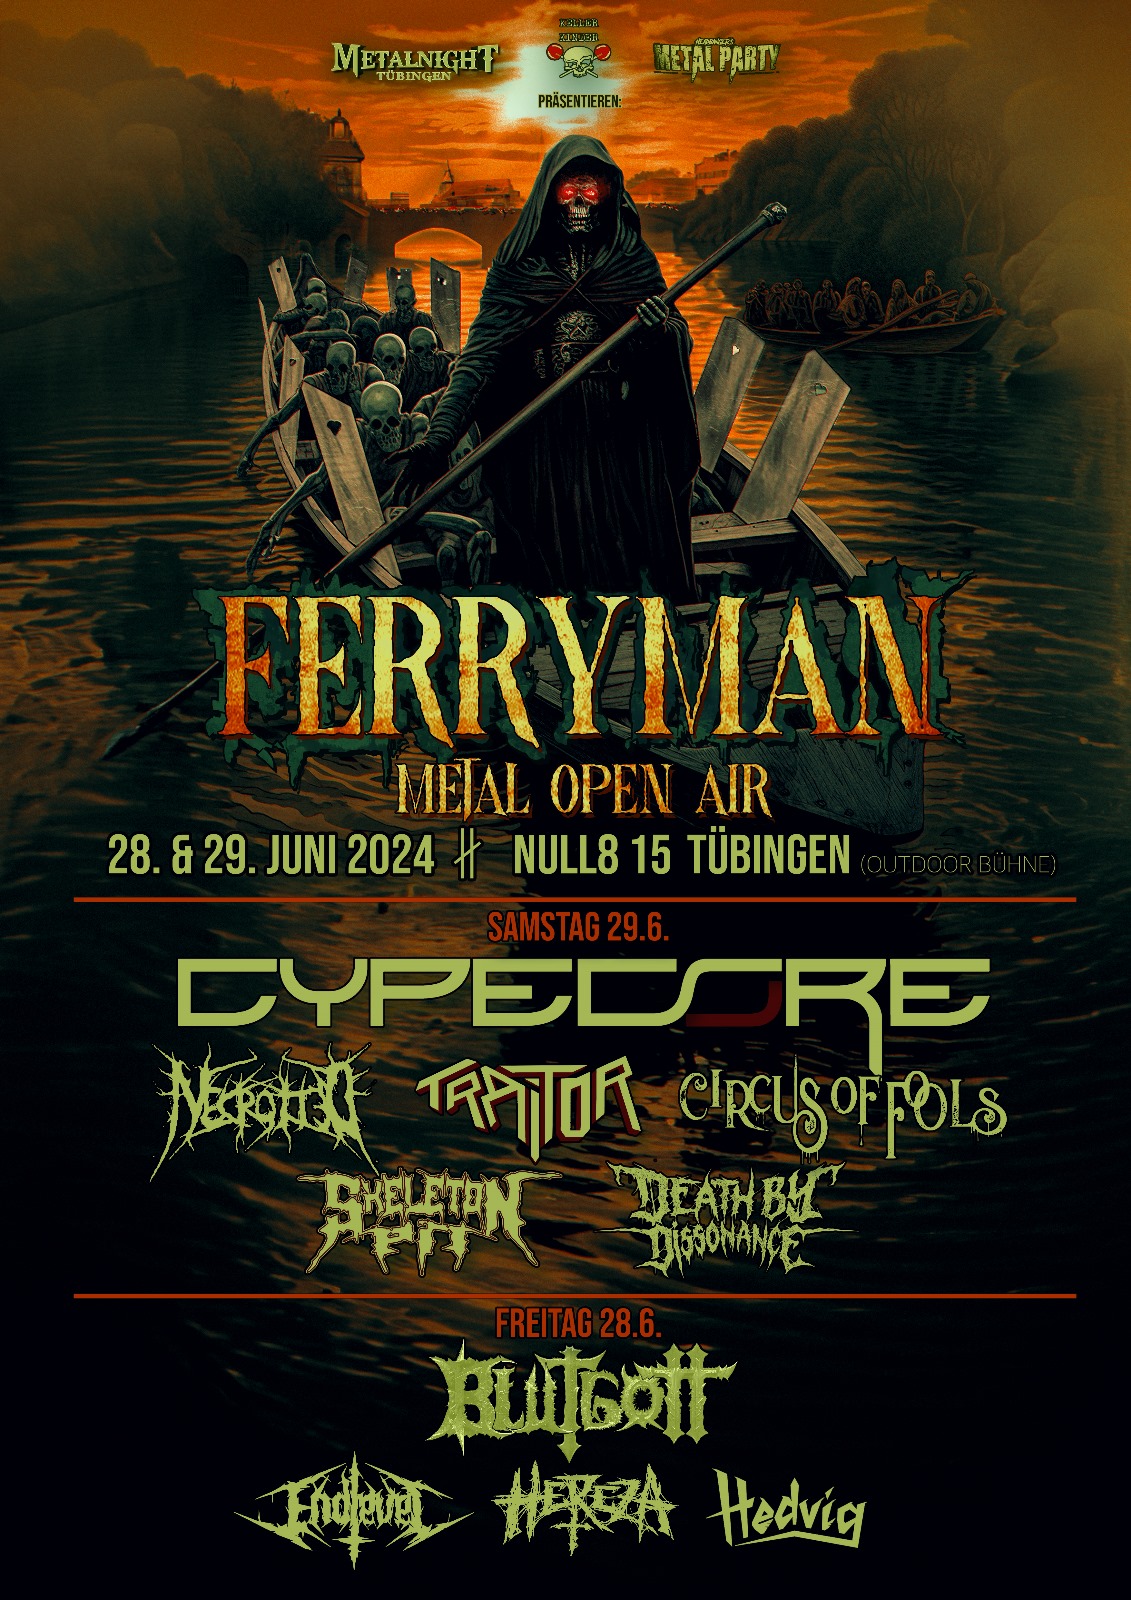 Ferryman Metal Open Air Poster